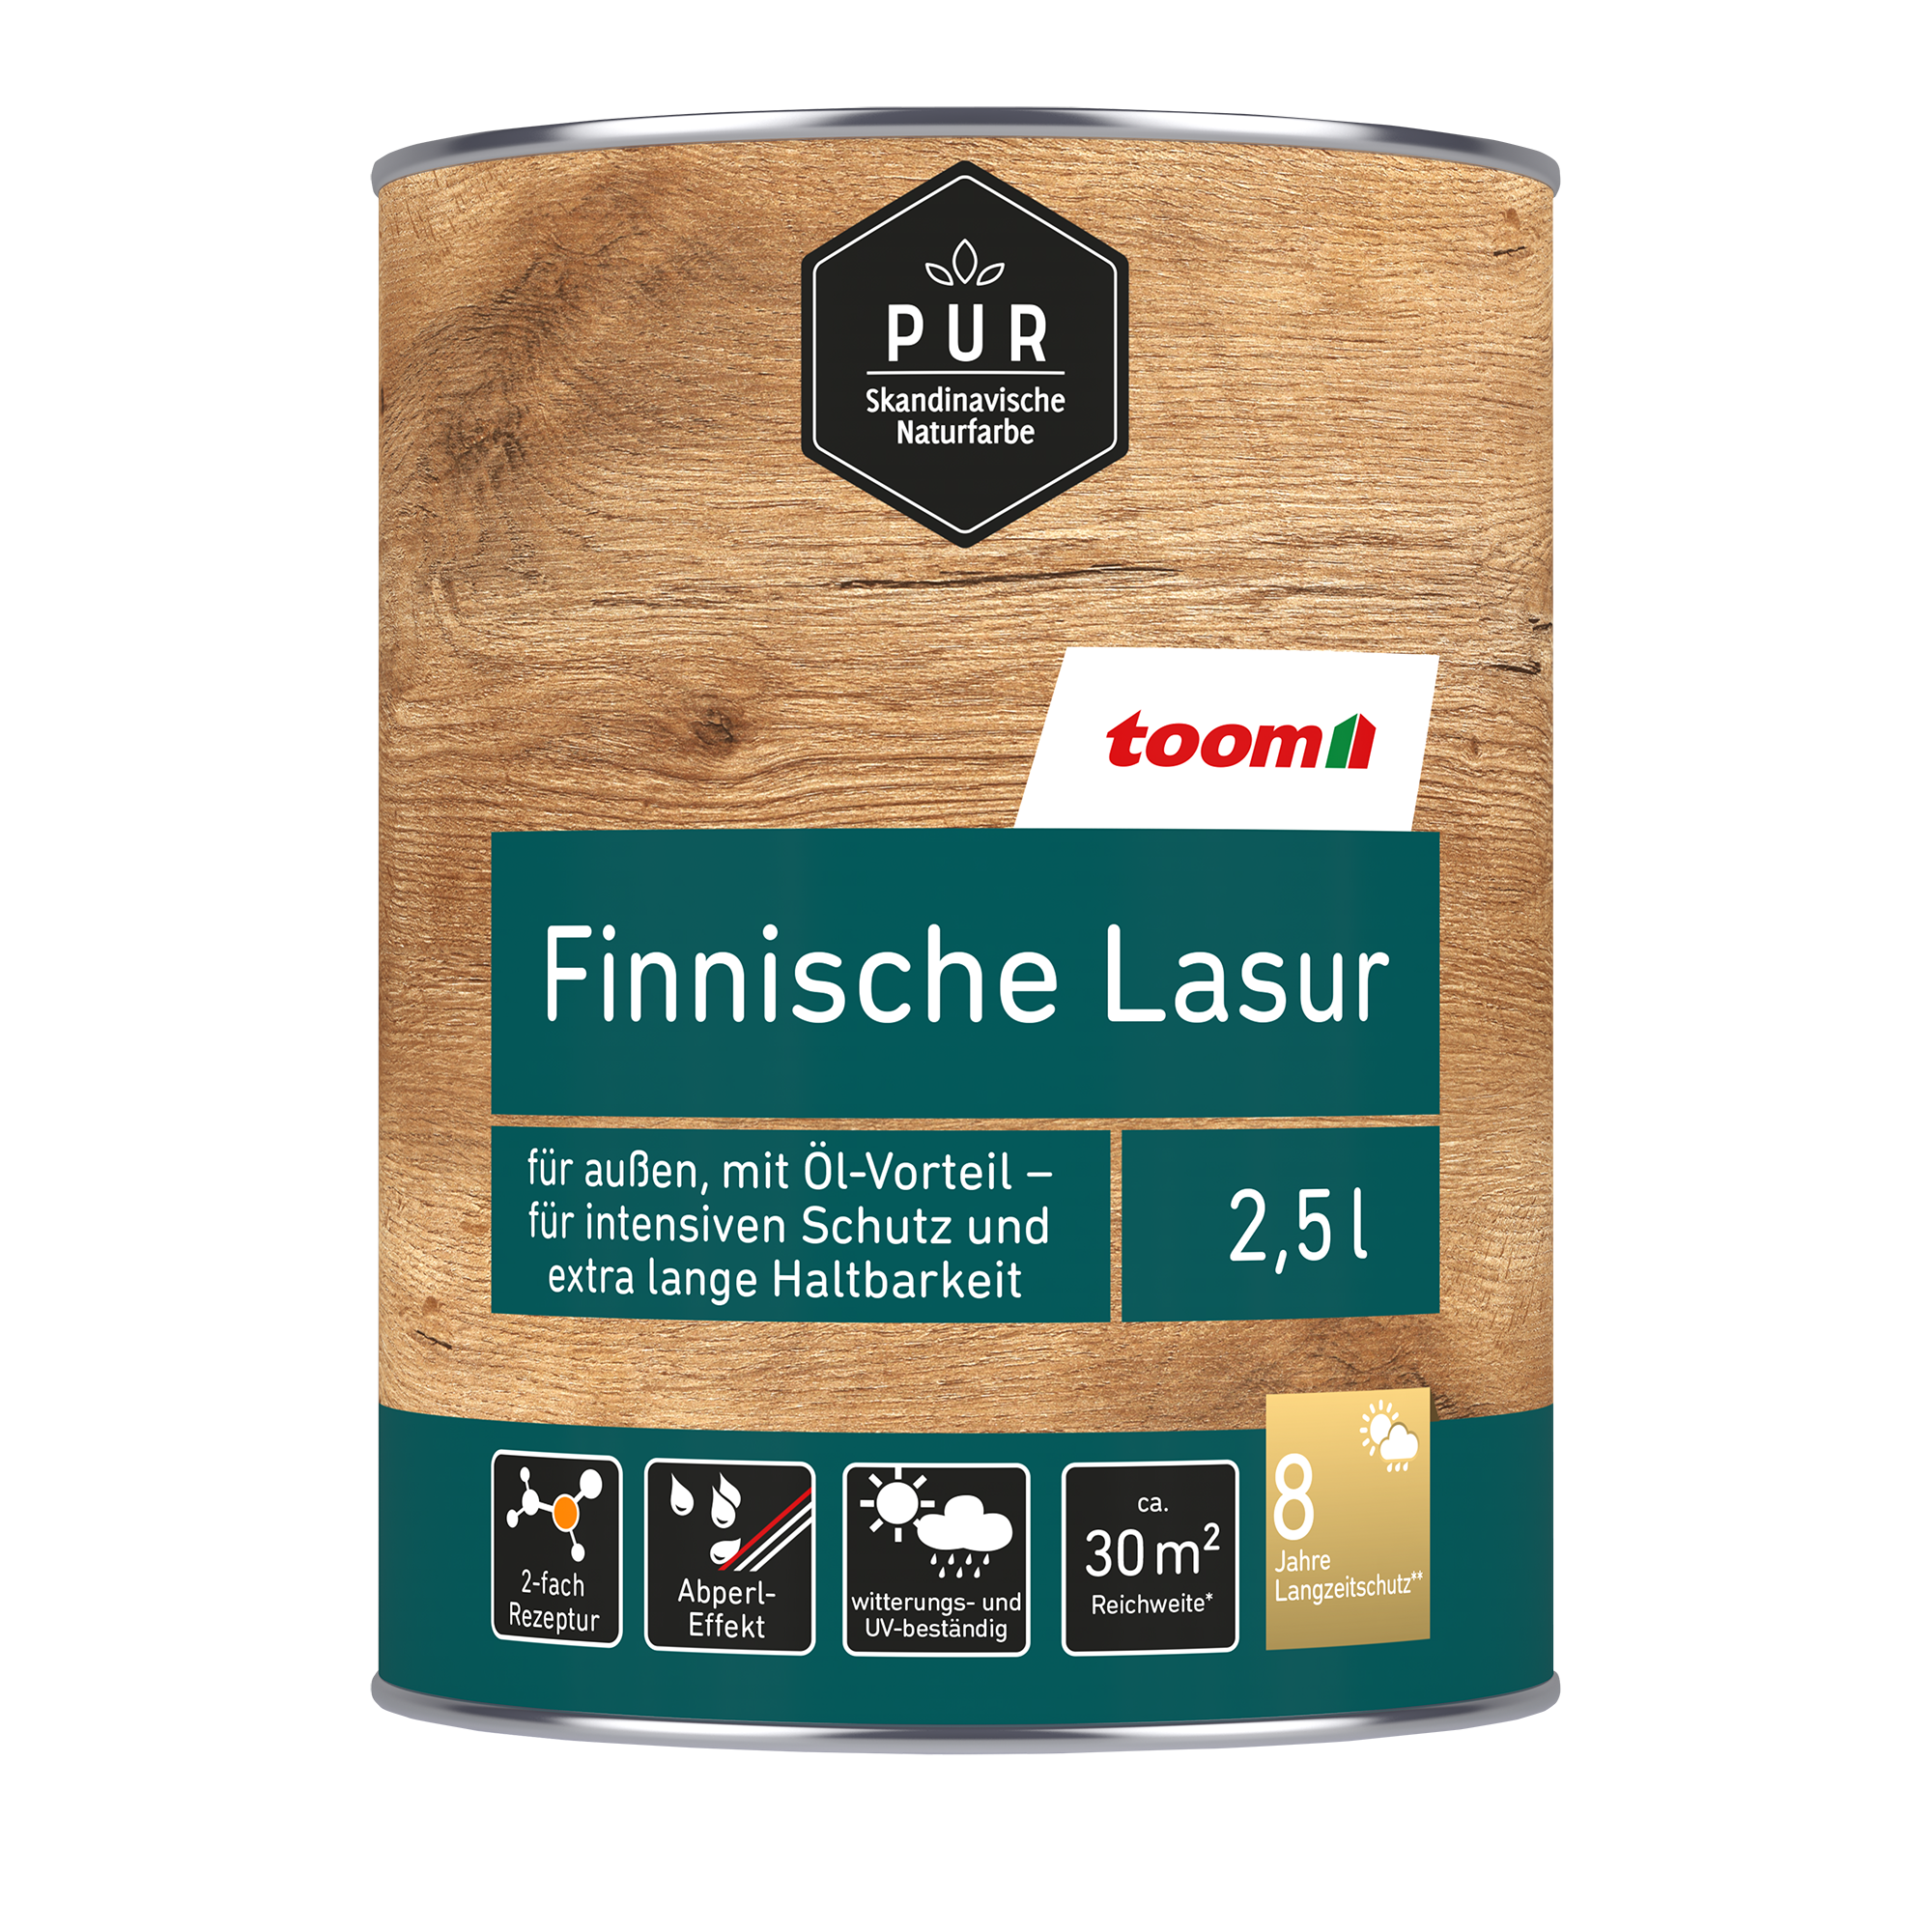 Finnische Lasur 'Natur' beige 2,5 l + product picture